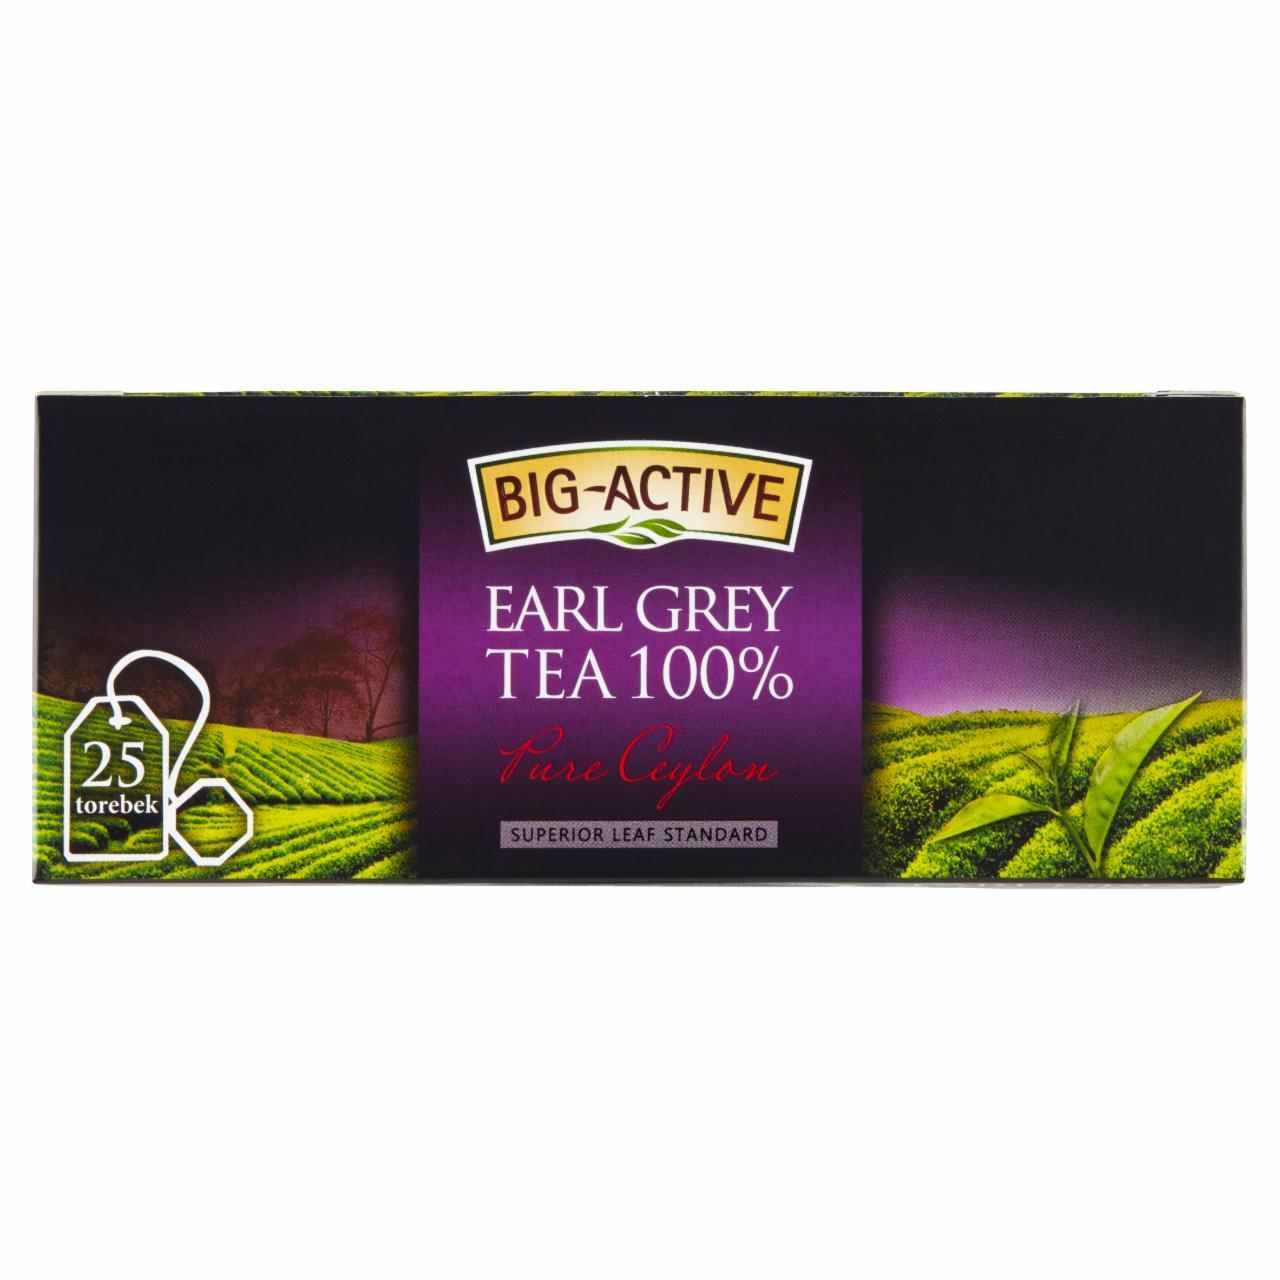 Zdjęcia - Big-Active Pure Ceylon Earl Grey Herbata 100% 37,5 g (25 torebek)